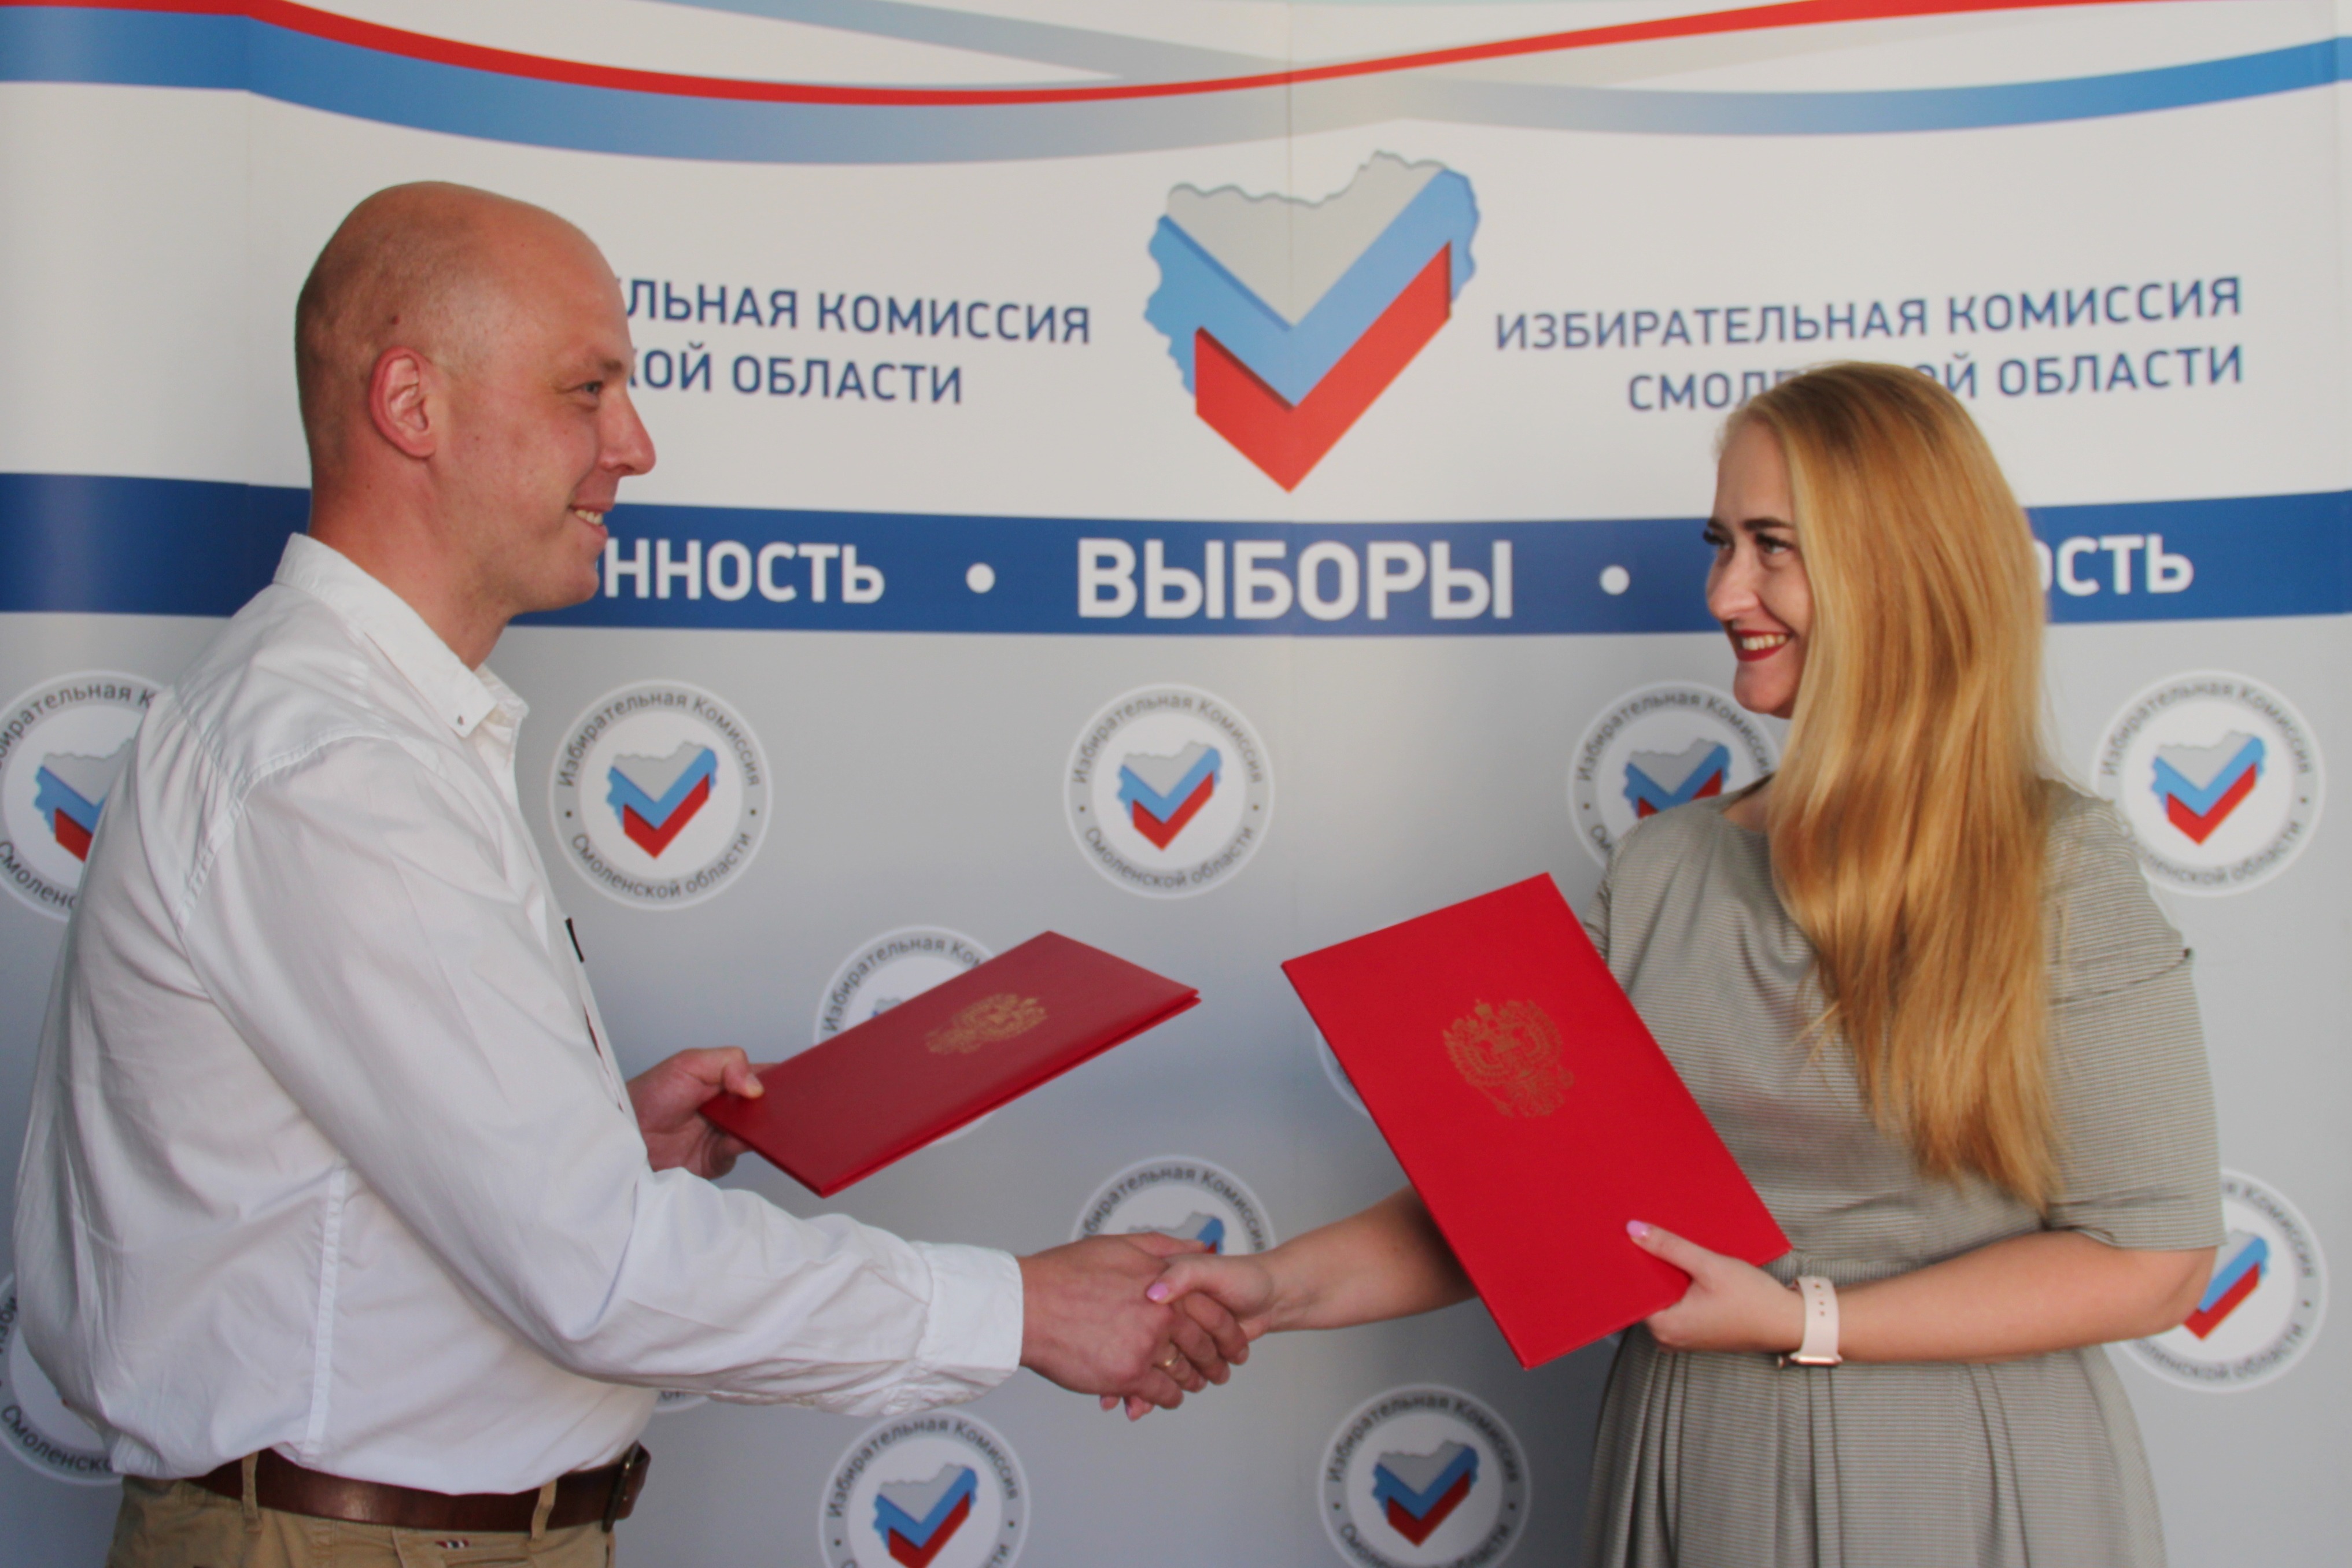 ЦУР Смоленской области будет сотрудничать с региональной избирательной комиссией 